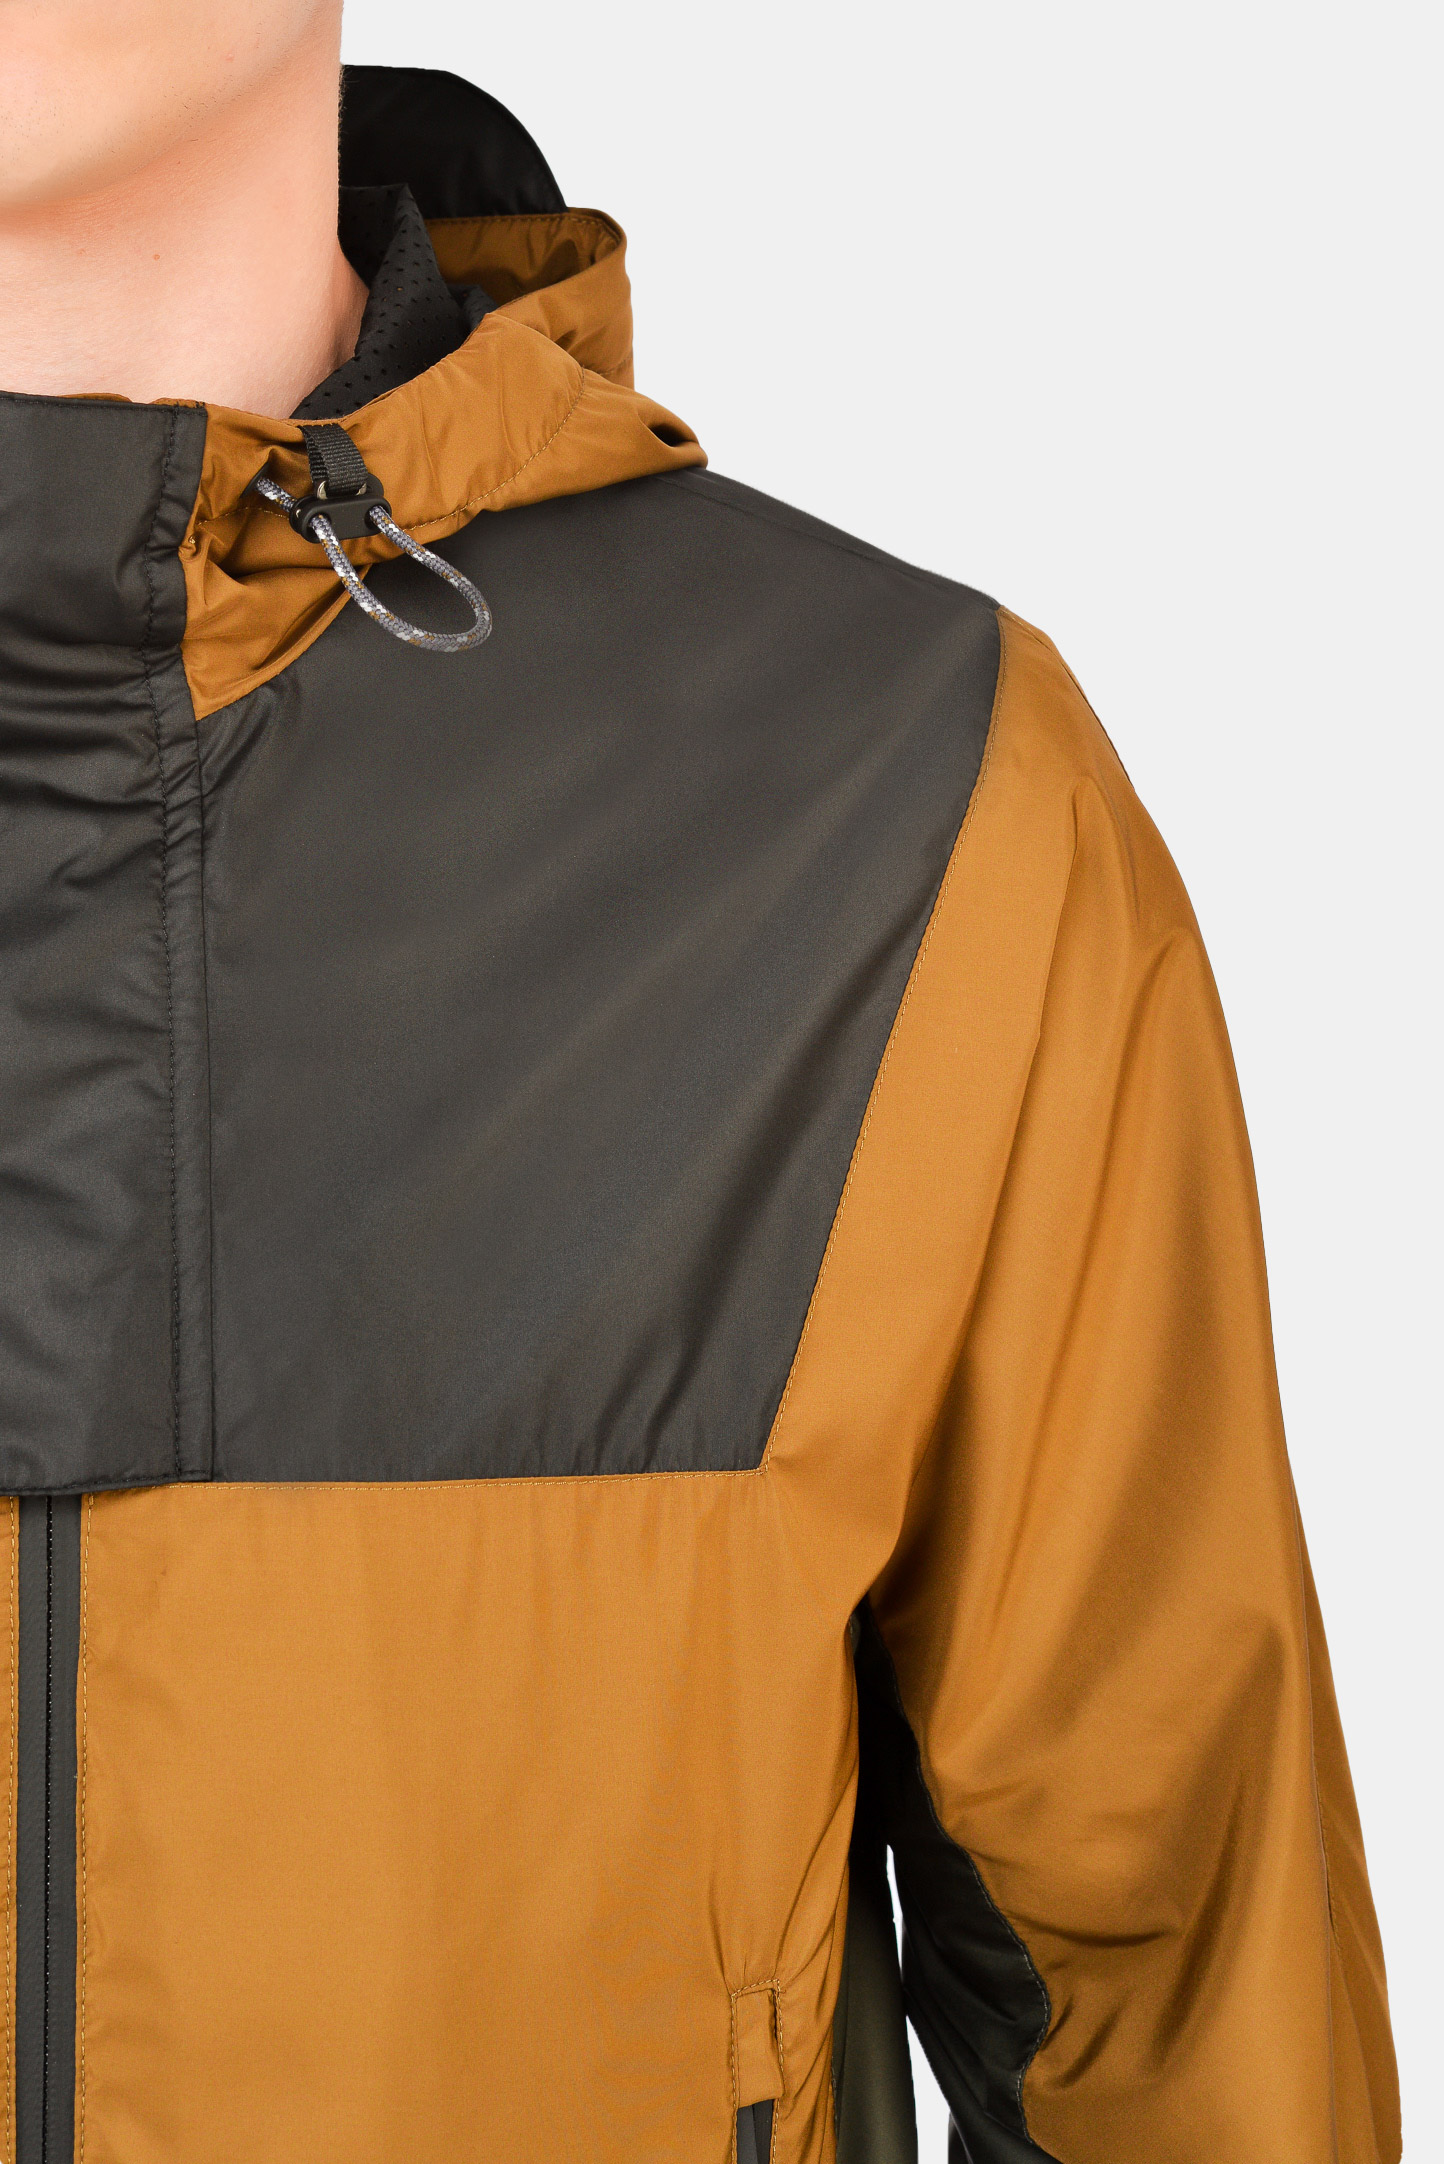 Куртка CANALI SY01617/702, цвет: Коричневый, Мужской